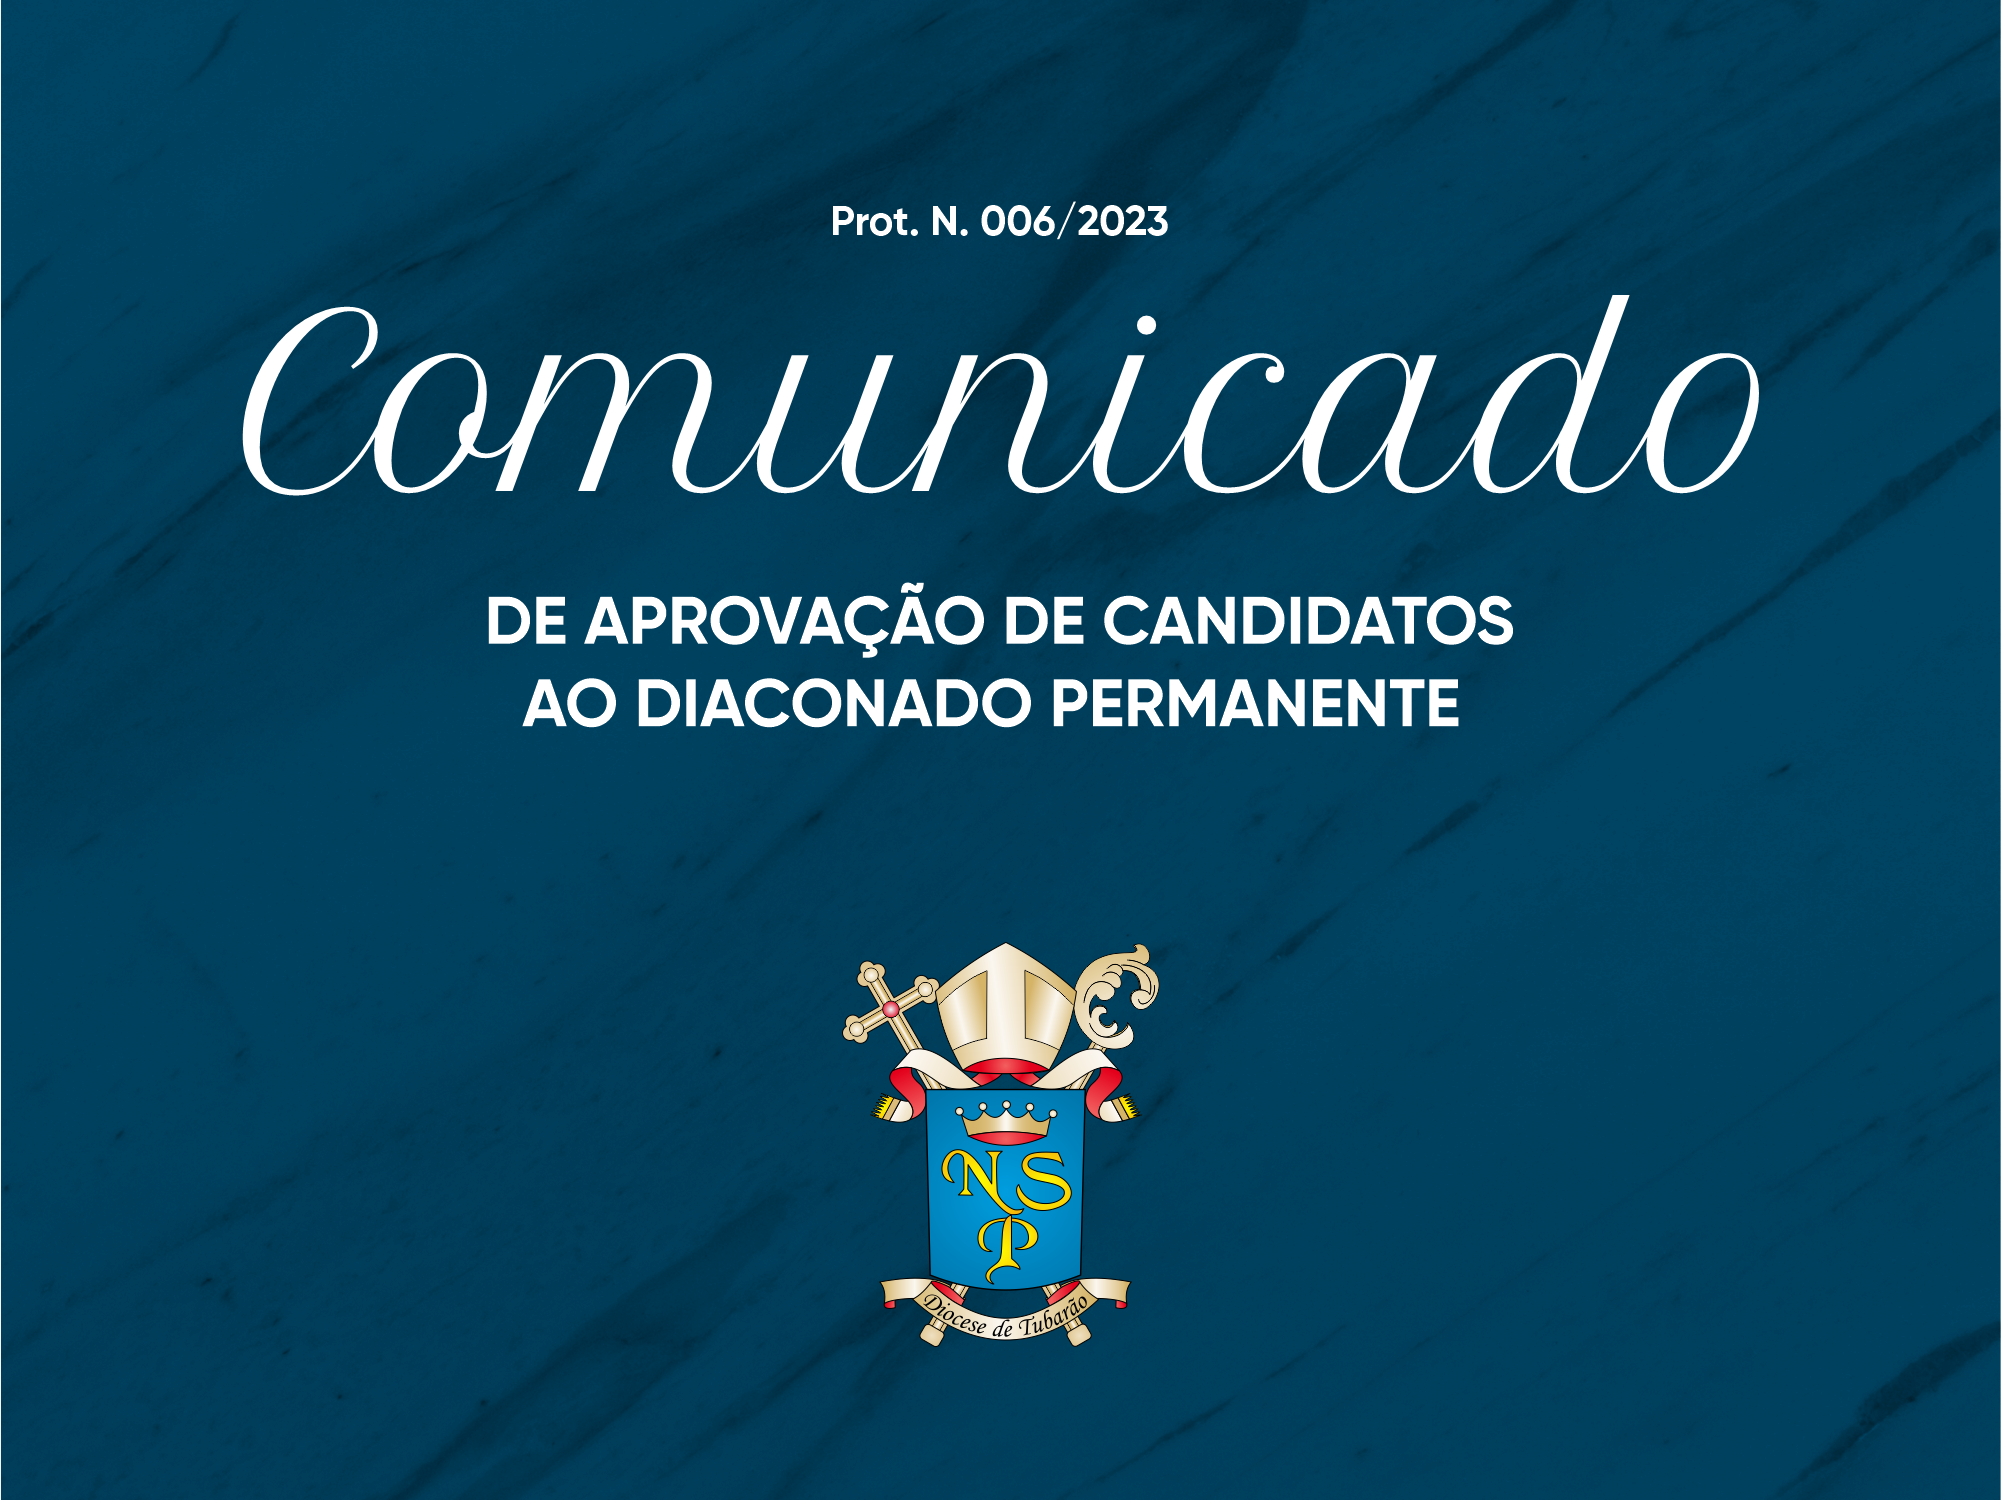 Comunicado de aprovação de candidatos ao diaconado permanente